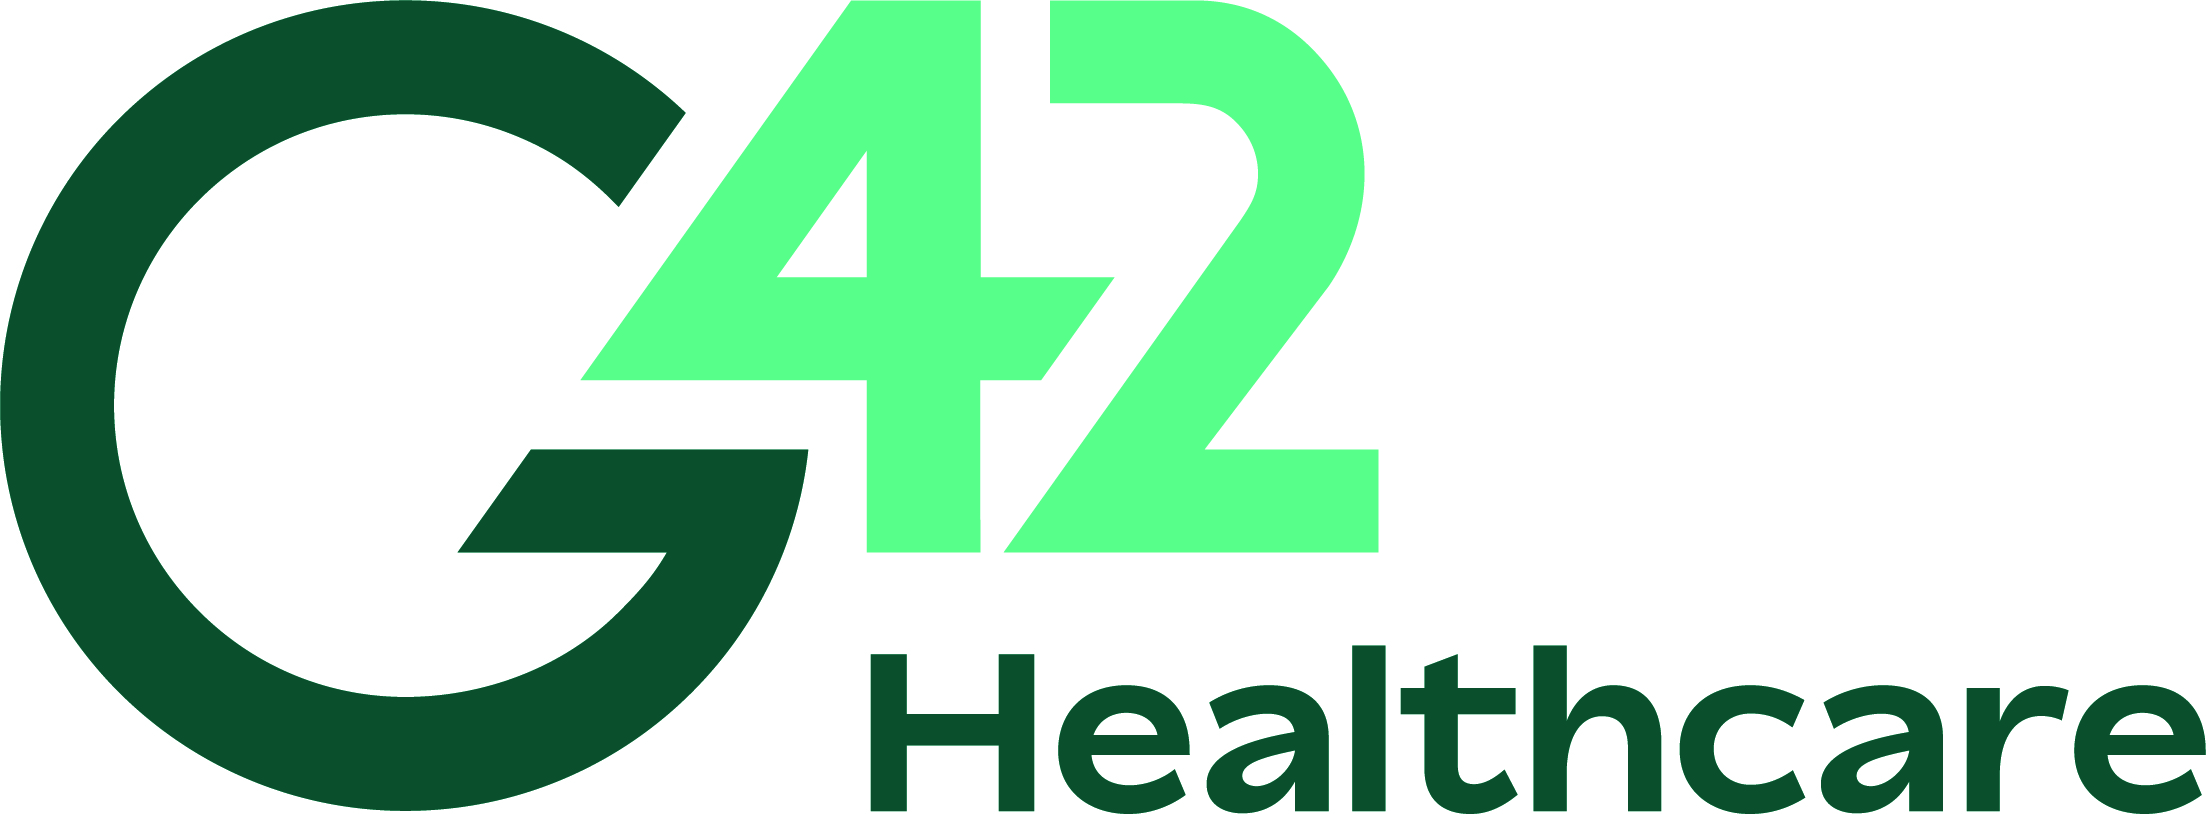 G42 Healthcare logo